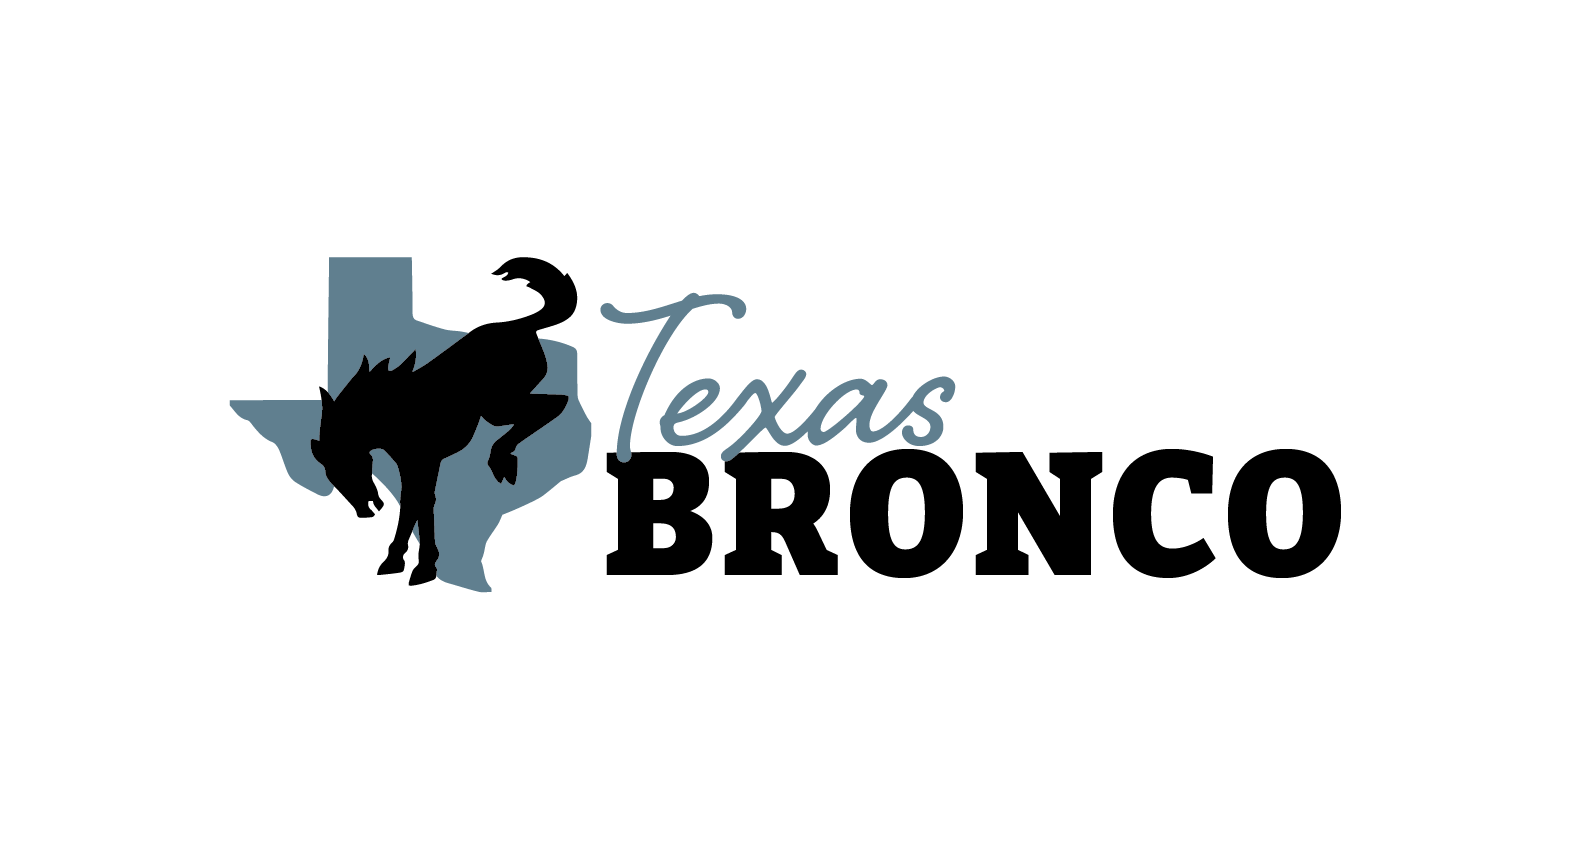 Ford Bronco Texas Bronco logo TexasBronco_Area51